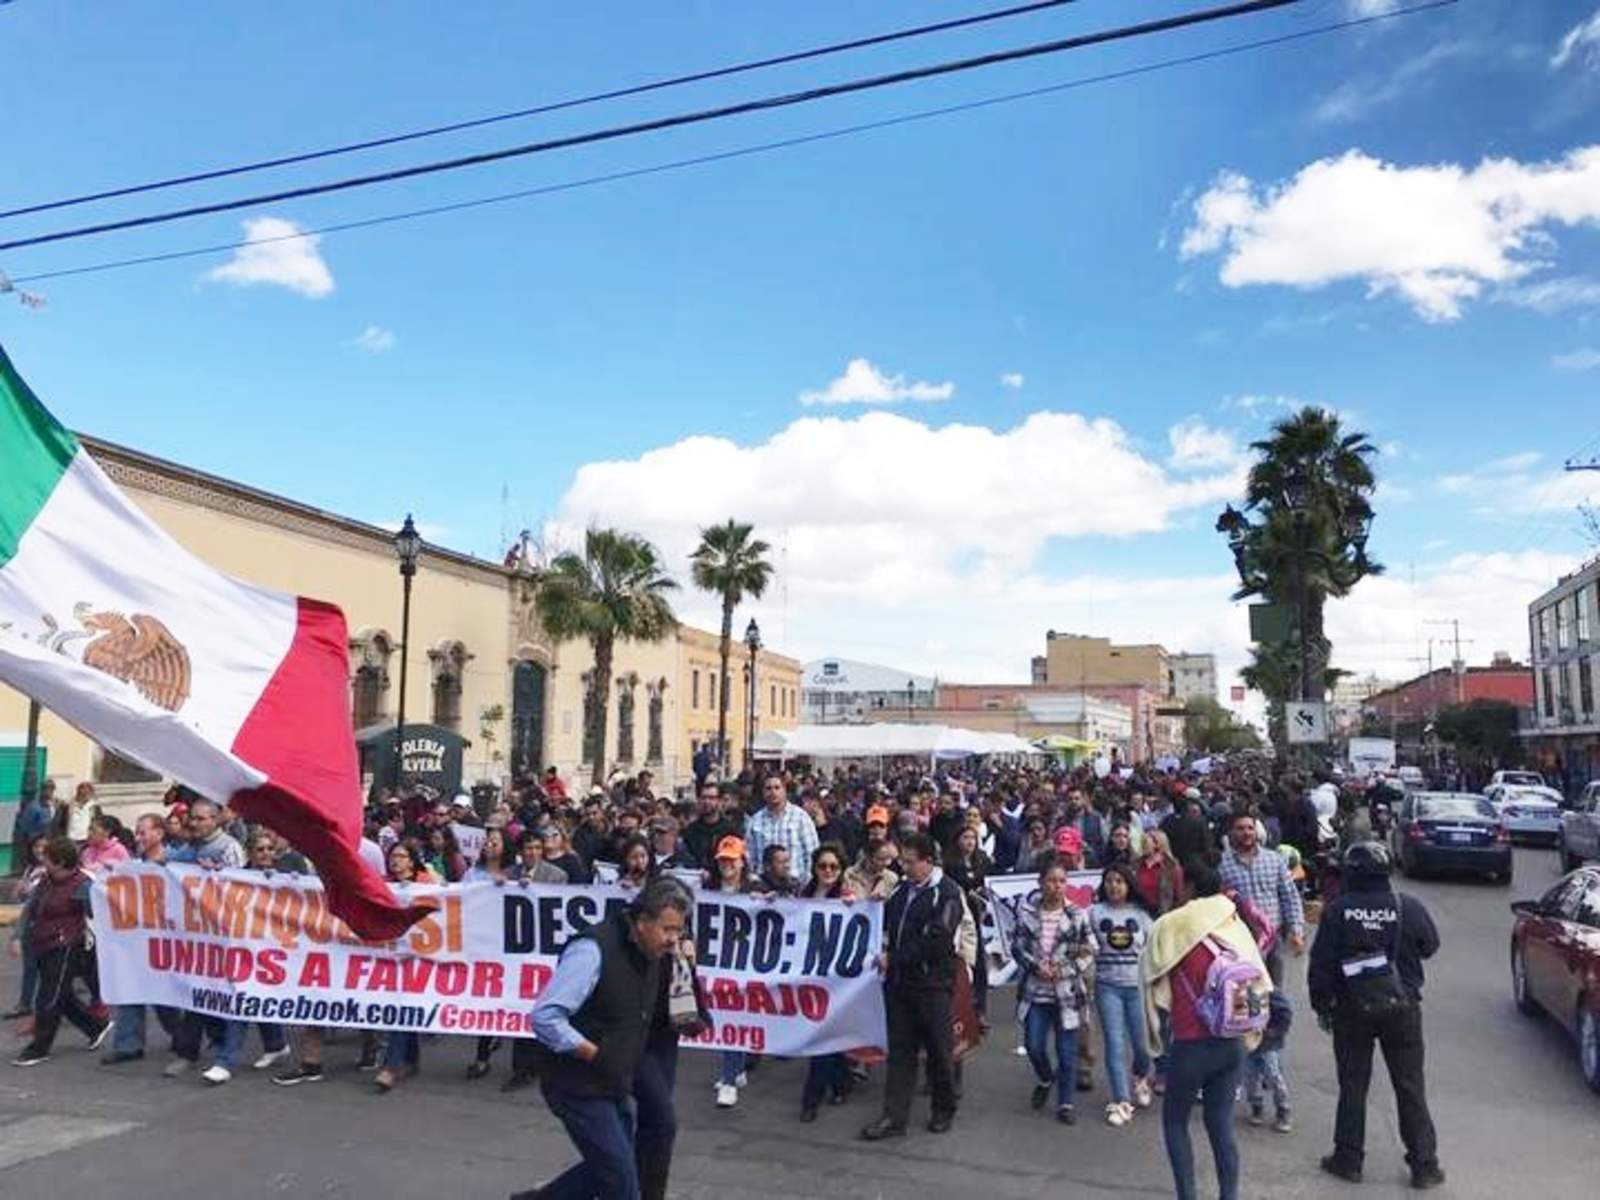 Al frente del contingente, los manifestantes sostenían una lona con el mensaje “Exigimos respeto, #YoConElDoc”. (EL SIGLO DE TORREÓN)

